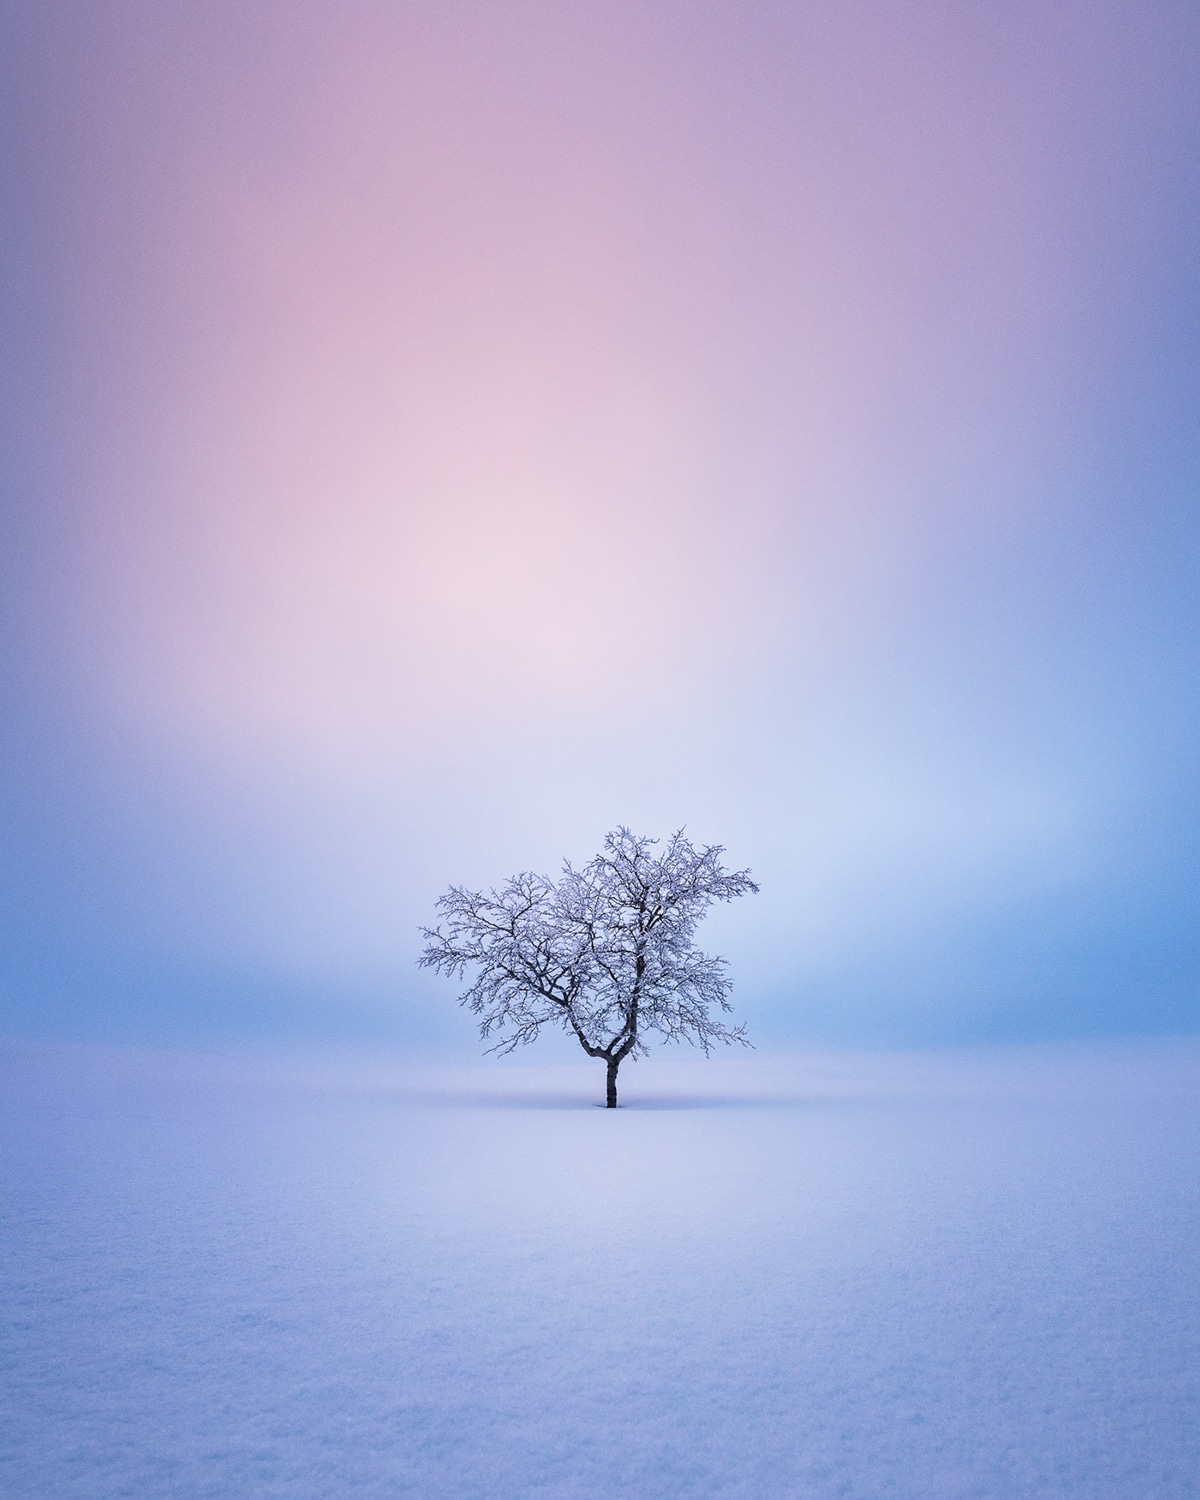 Lone Tree in Wintery Landscape